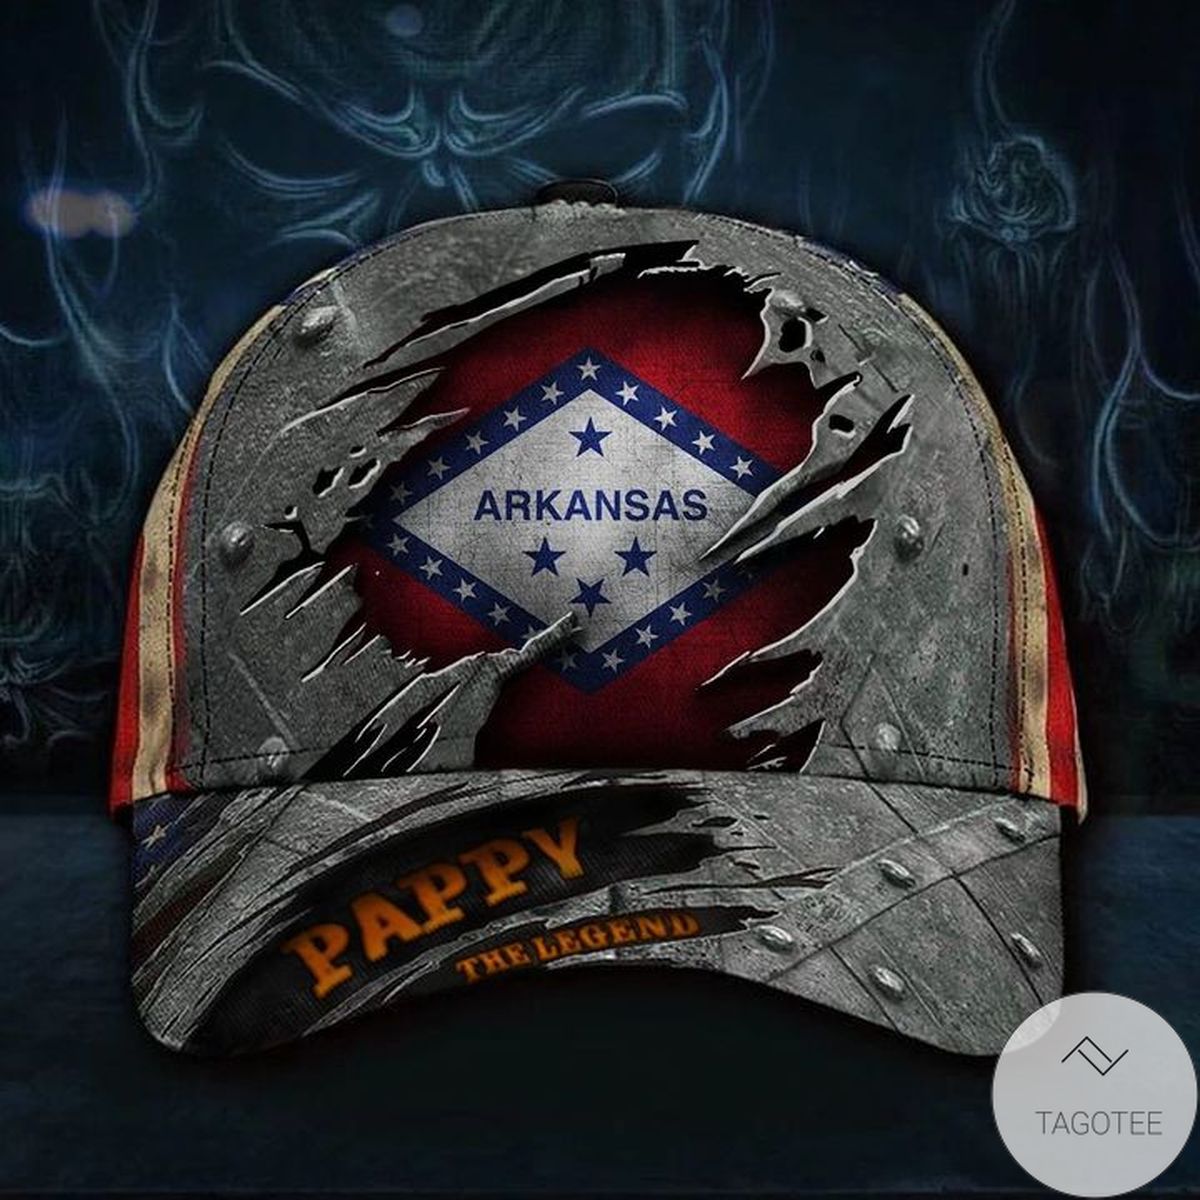 Arkansas Pappy The Legend Hat Vintage USA Flag Cap Unique Father's Day Gift Ideas